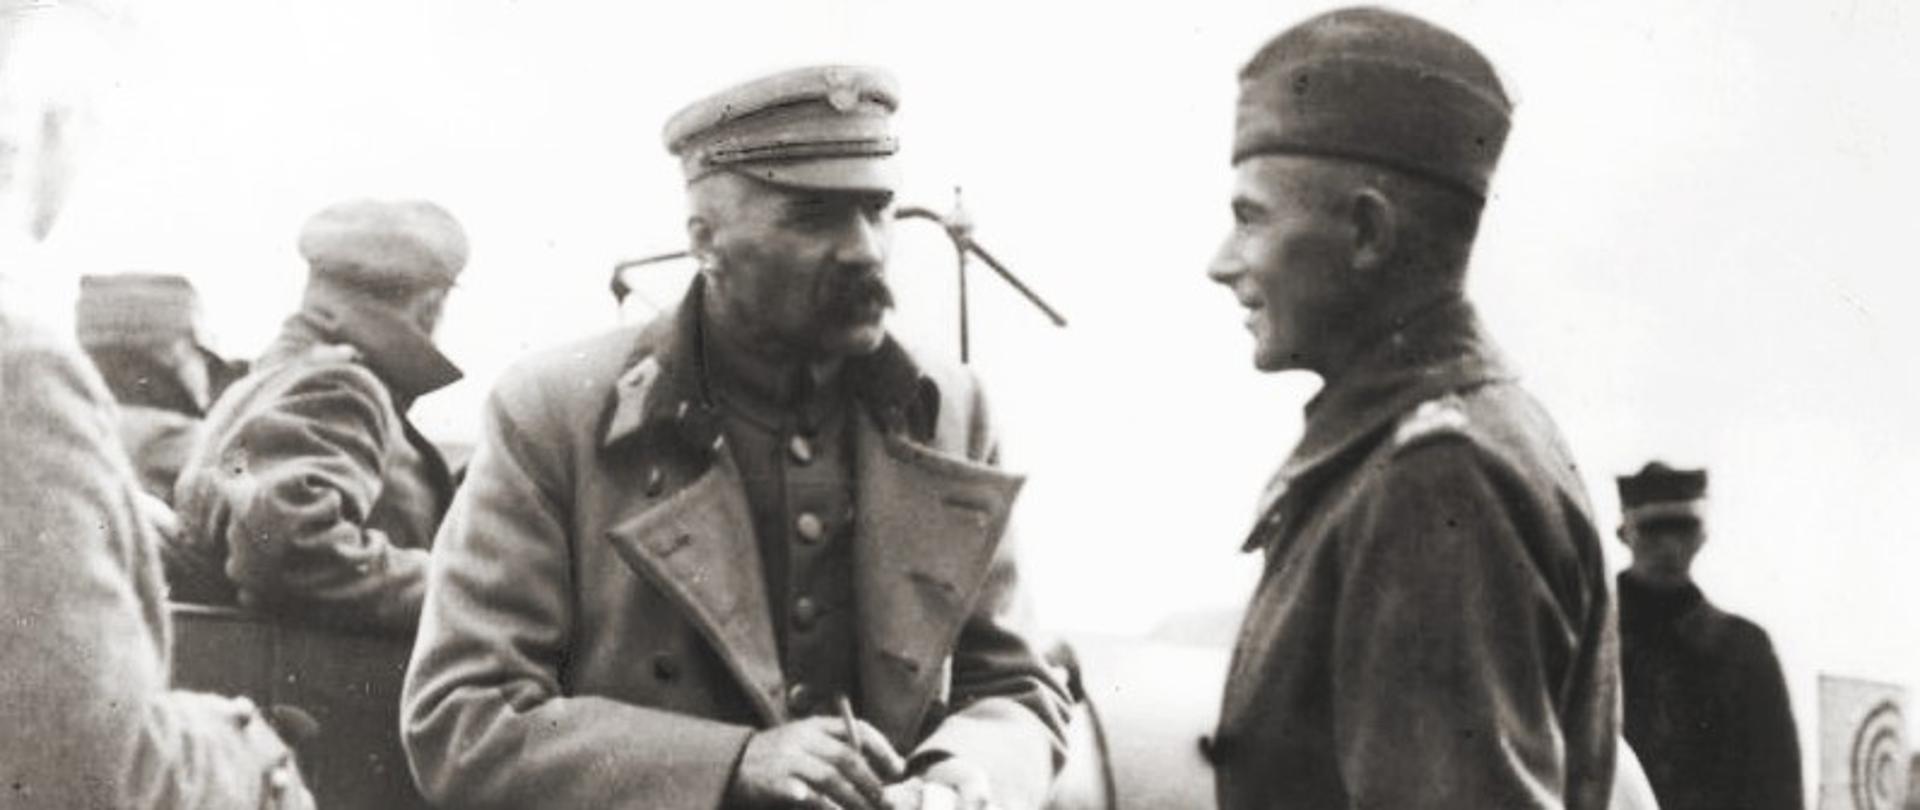 Naczelnik_Państwa_Józef_Piłsudski_i_gen_Edward_Rydz-Śmigły_podczas_wojny_polsko-bolszewickiej